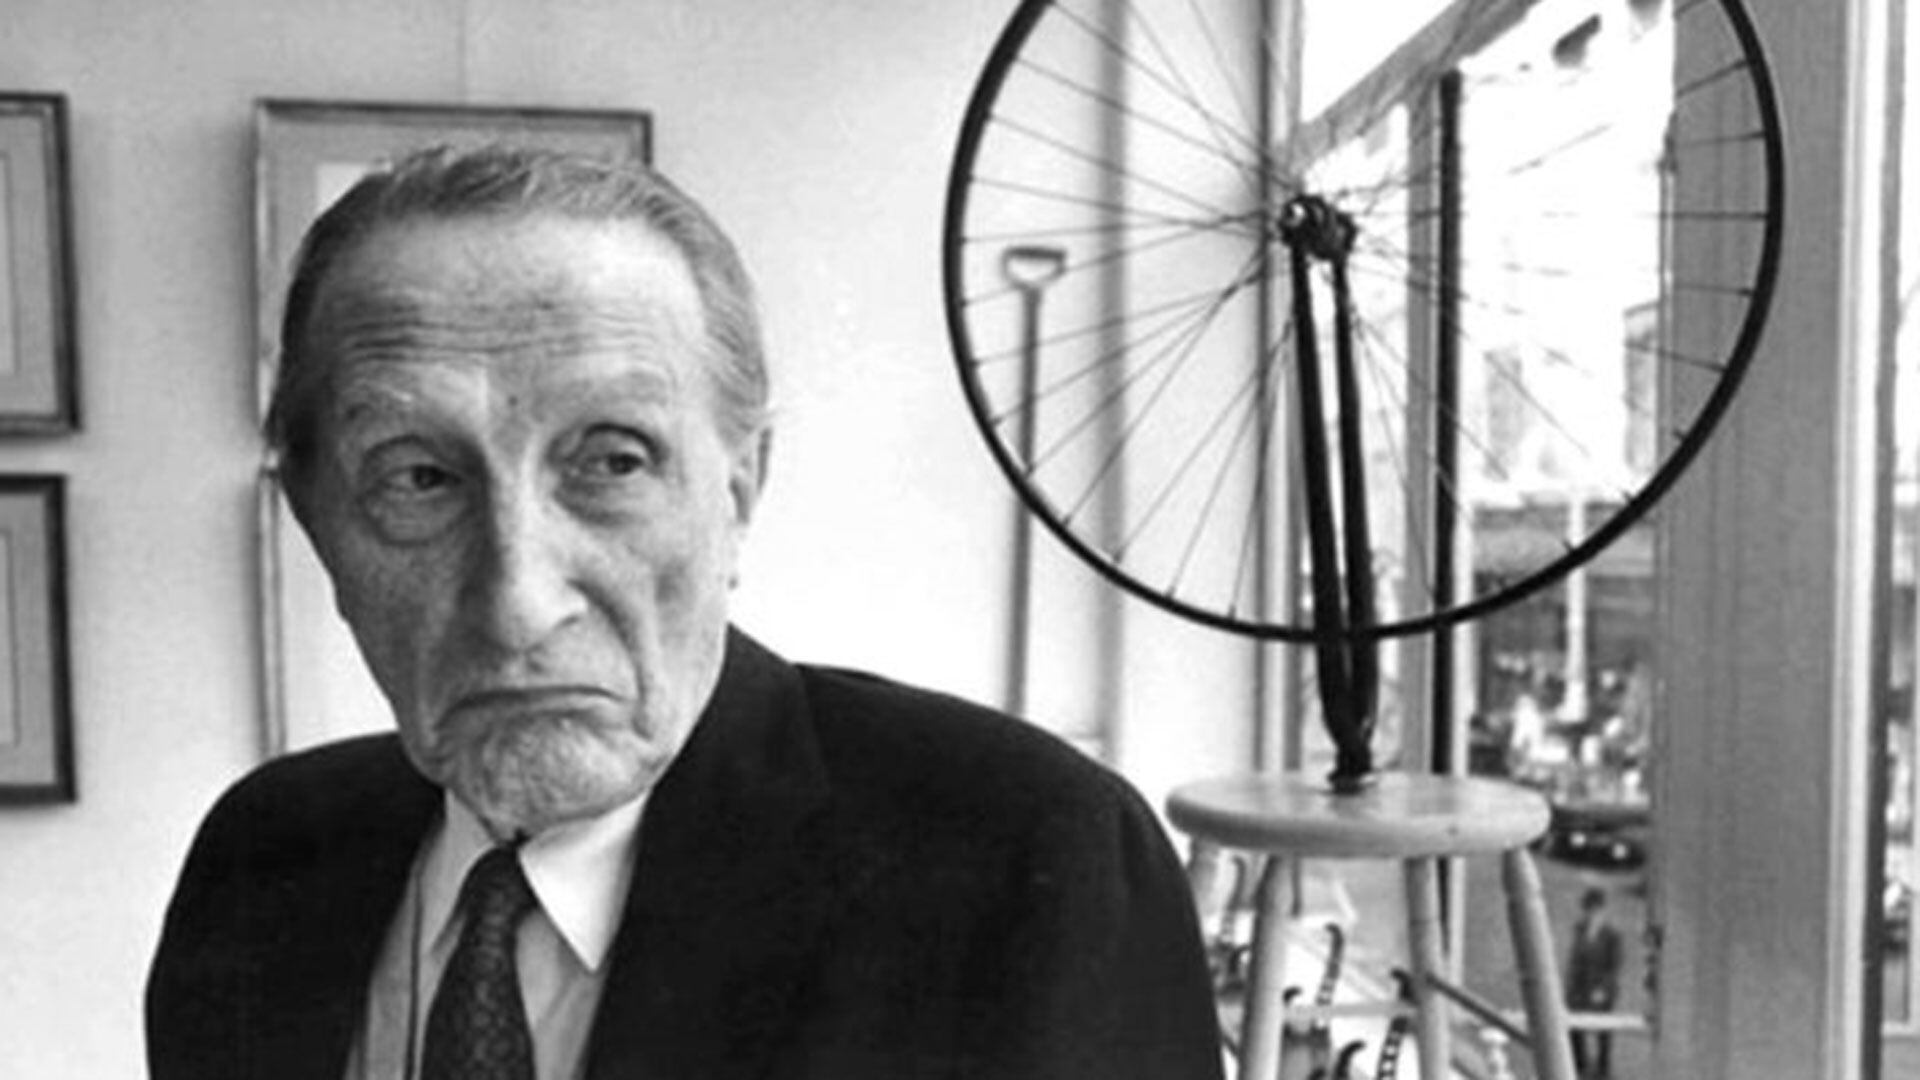 El juicio civil giró en torno a las investigaciones sobre el artista conceptual francés Marcel Duchamp, que derivarían luego en distintos homenajes a su obra